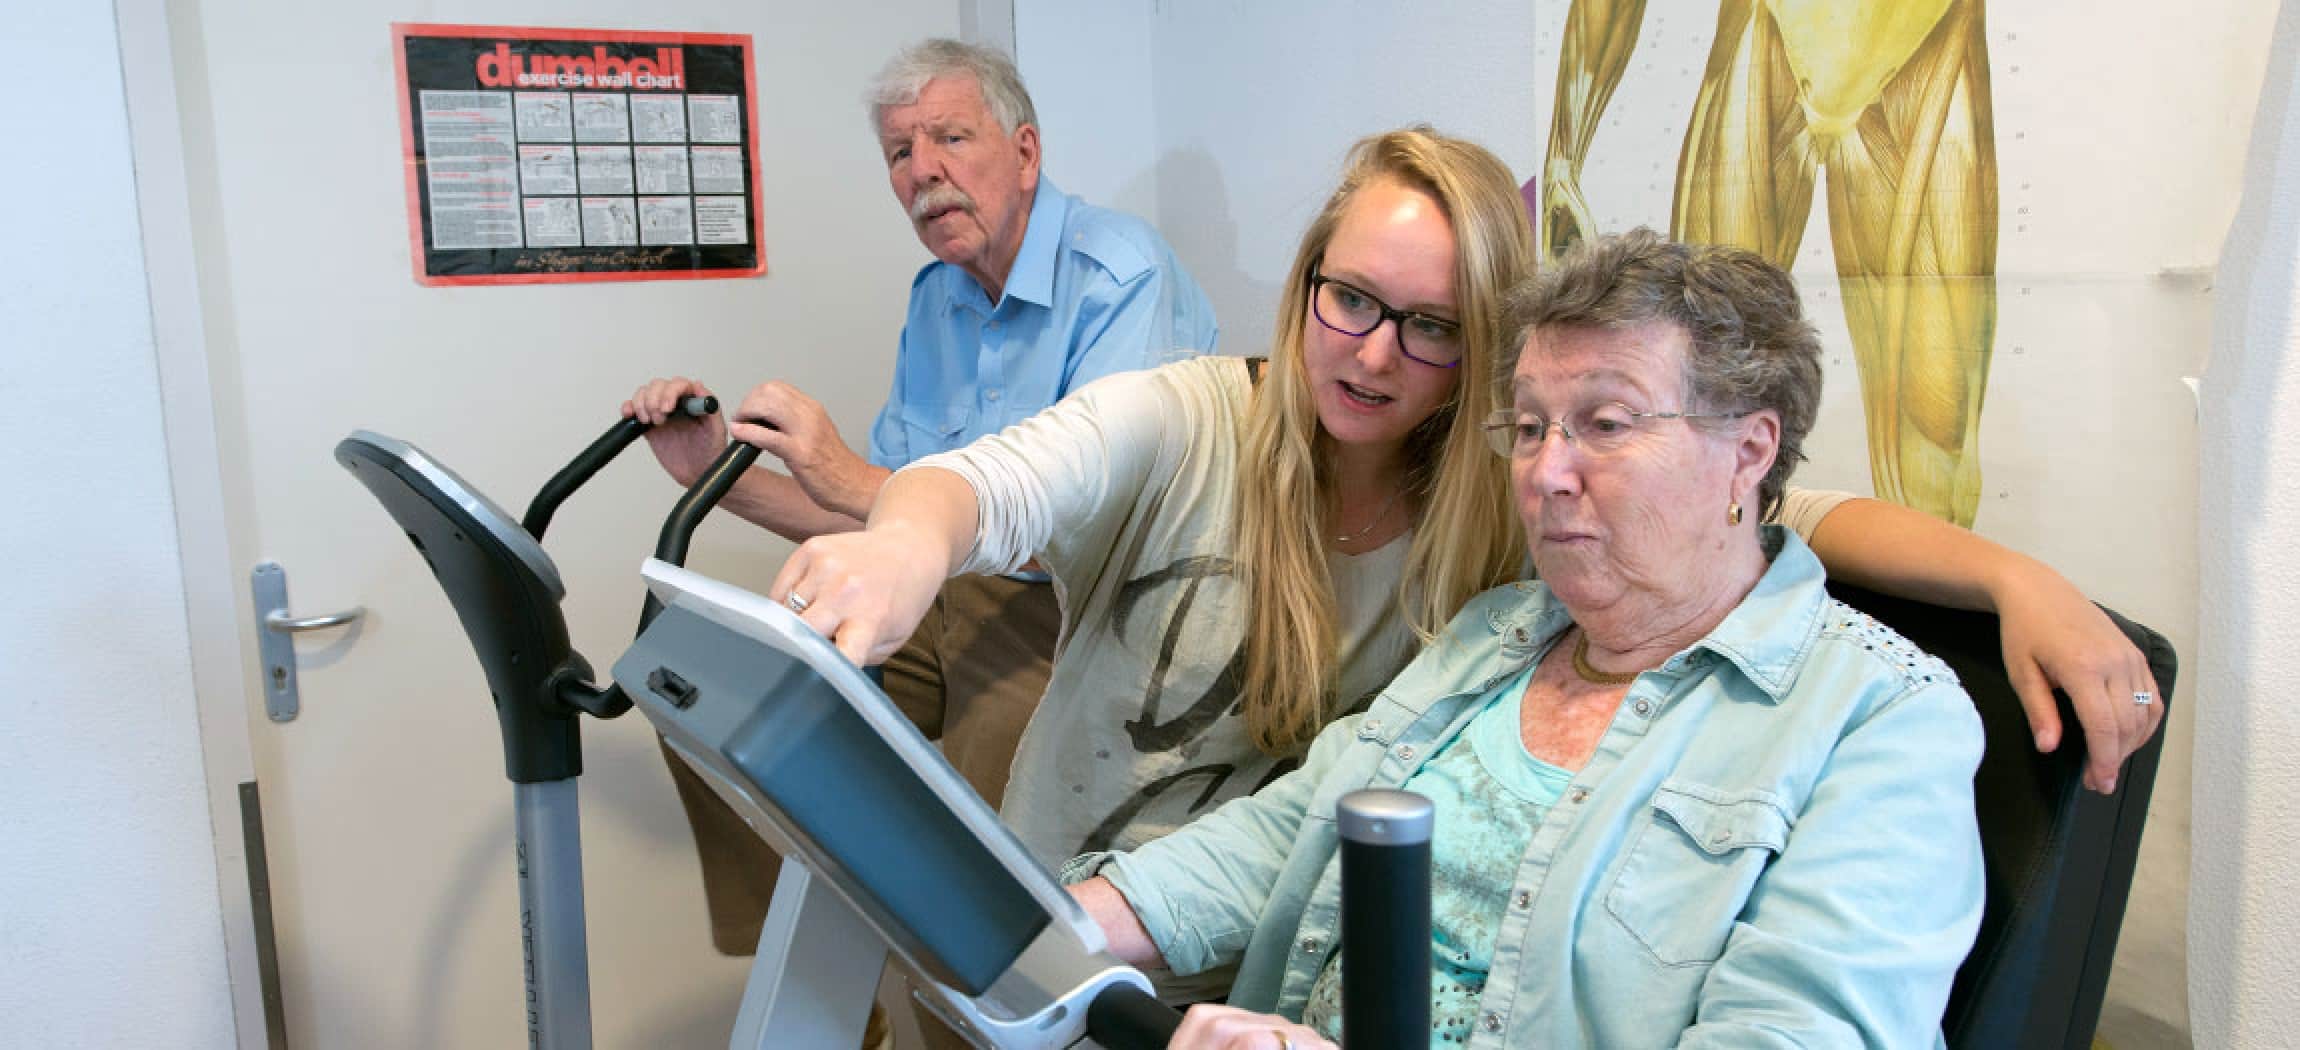 Fysiotherapeut geeft aanwijzingen aan oudere vrouw op hometrainer